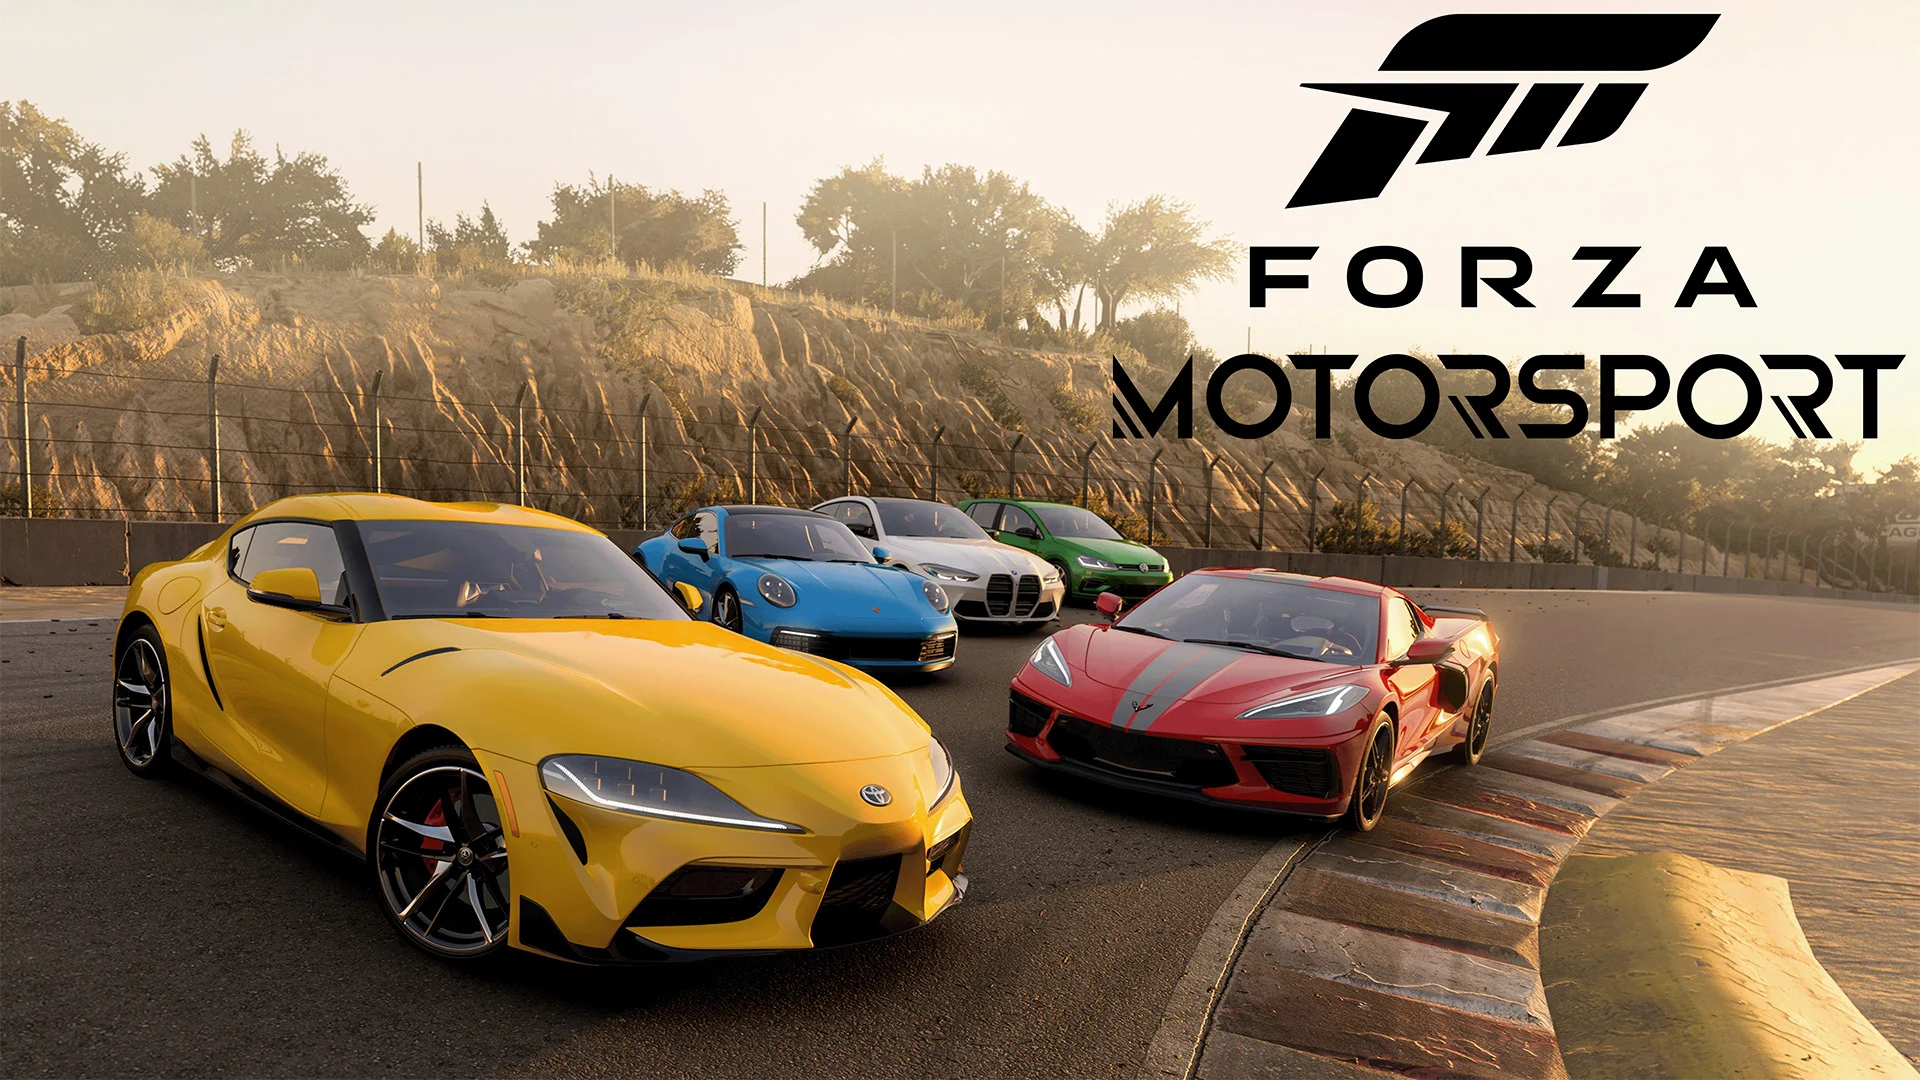 Forza Motorsport - aktualizacja 1.0 zawierająca szereg poprawek błędów i usprawnień rozgrywki